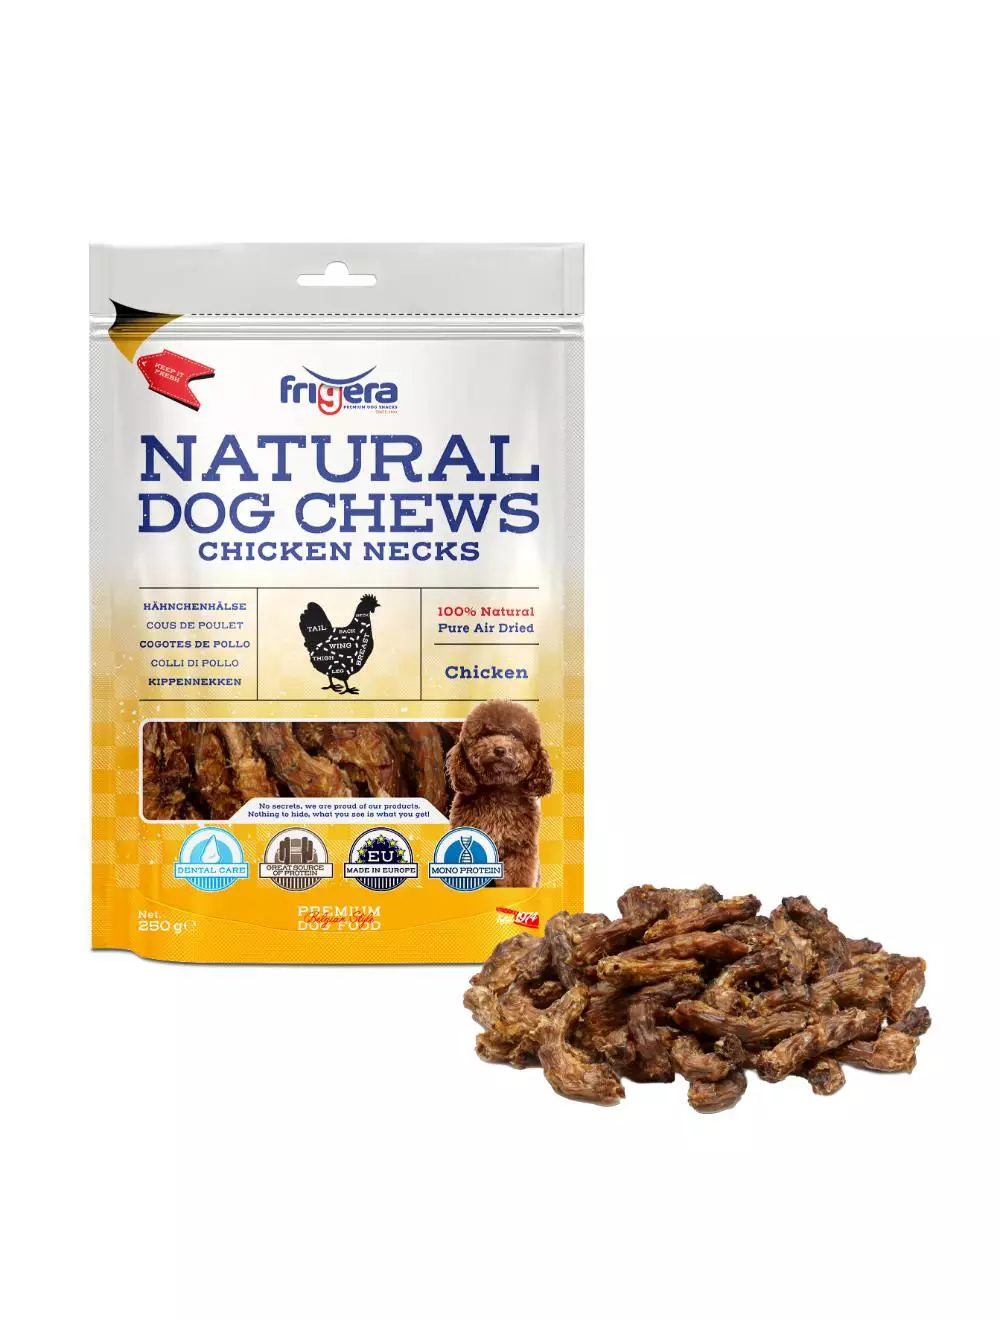 Frigera Natural Dog Chews Chicken Necks